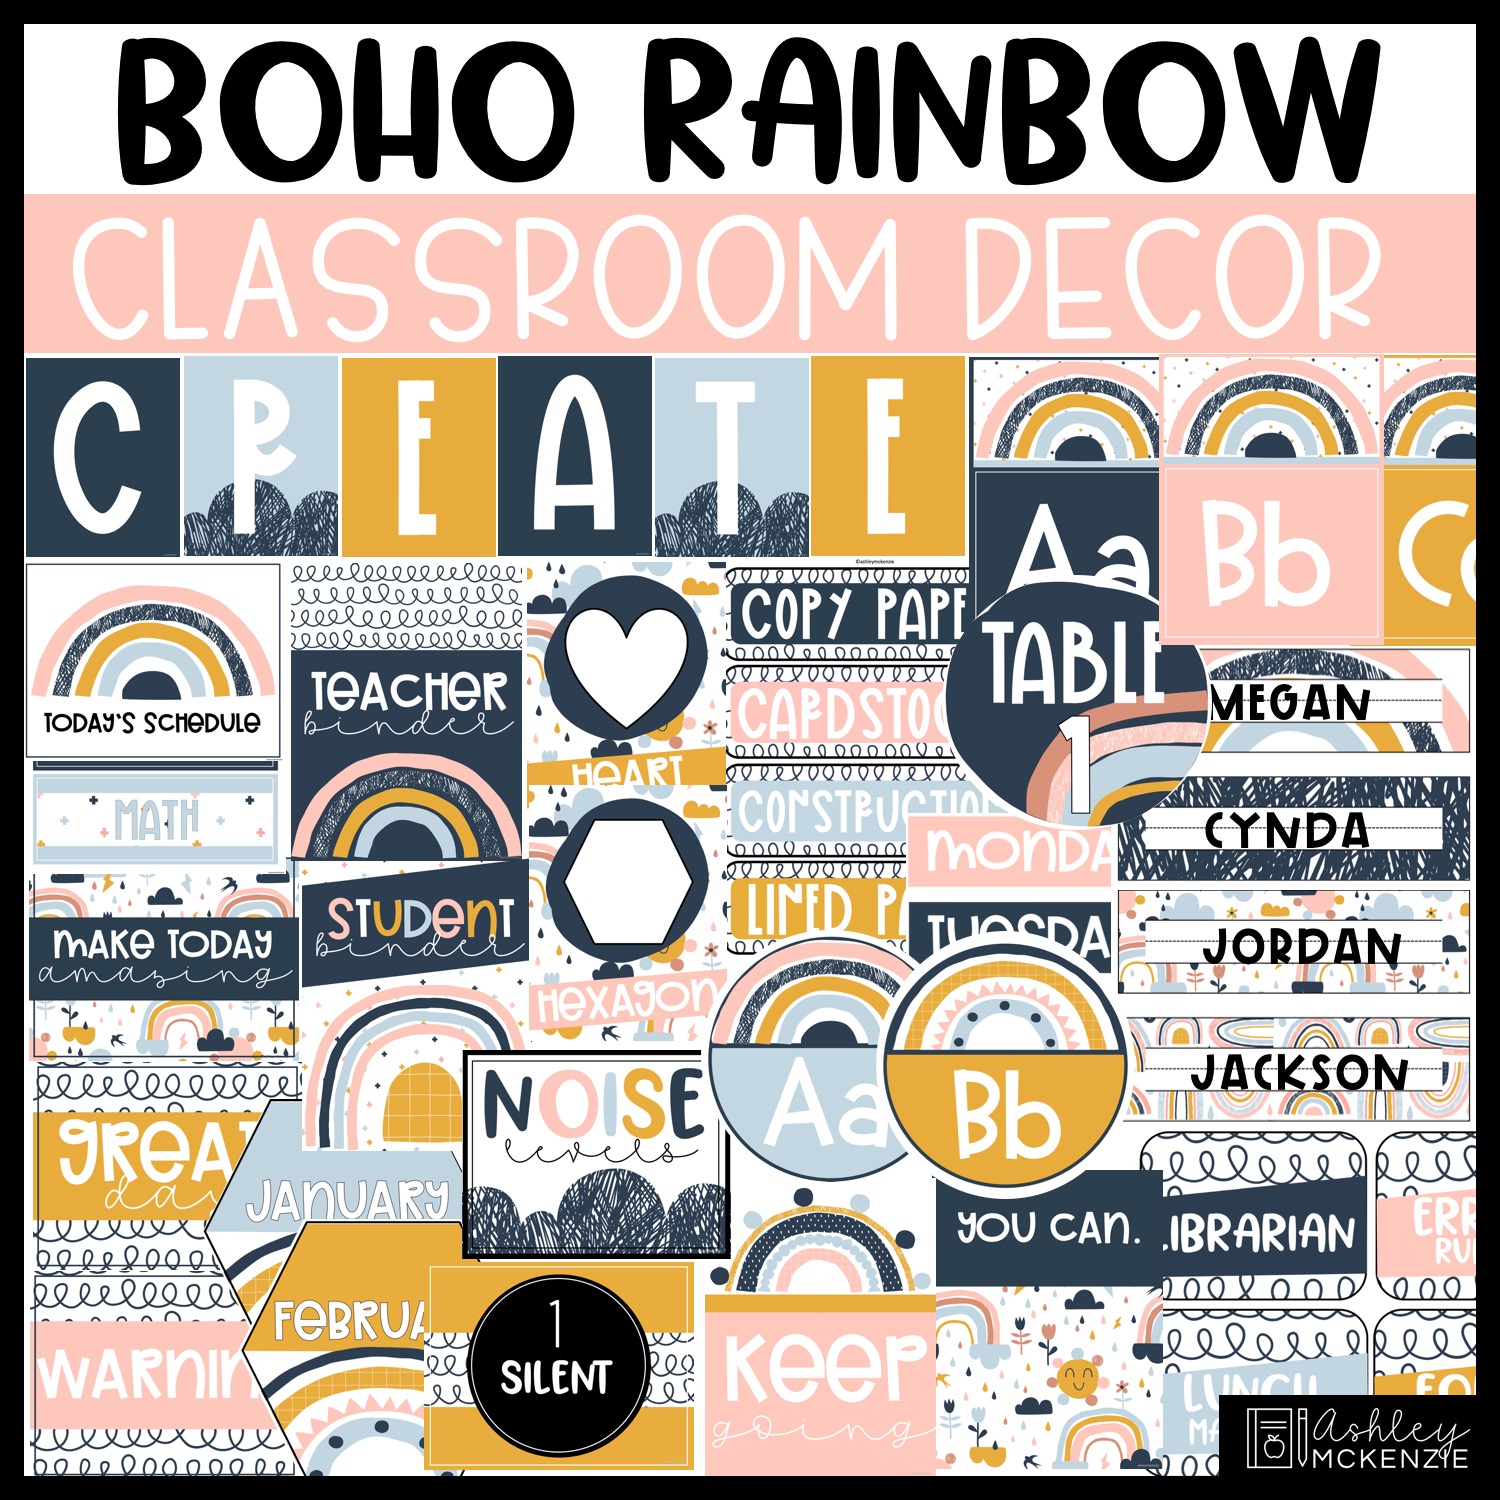 BOHO RAINBOW TEACHERS APPAREL Boho Rainbow Sixth Teachers 6TH Grade Cheetah Print Throw Pillow Multicolor 16x16 